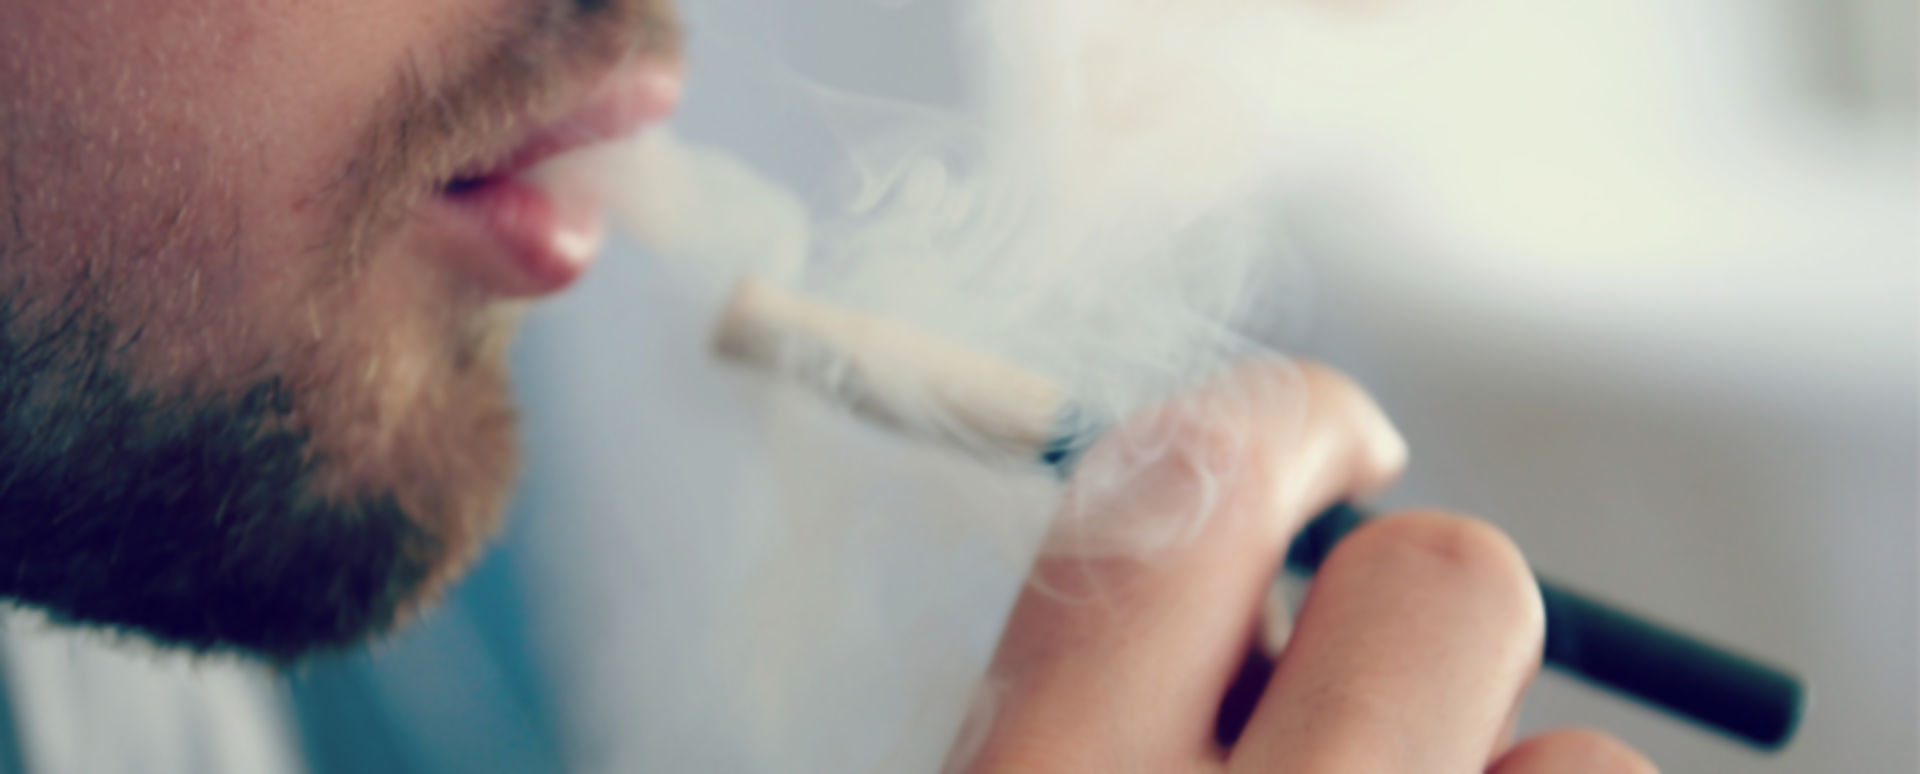 Einstiegsdroge in Nikotinsucht: Mehr Heranwachsende konsumieren E-Zigaretten  